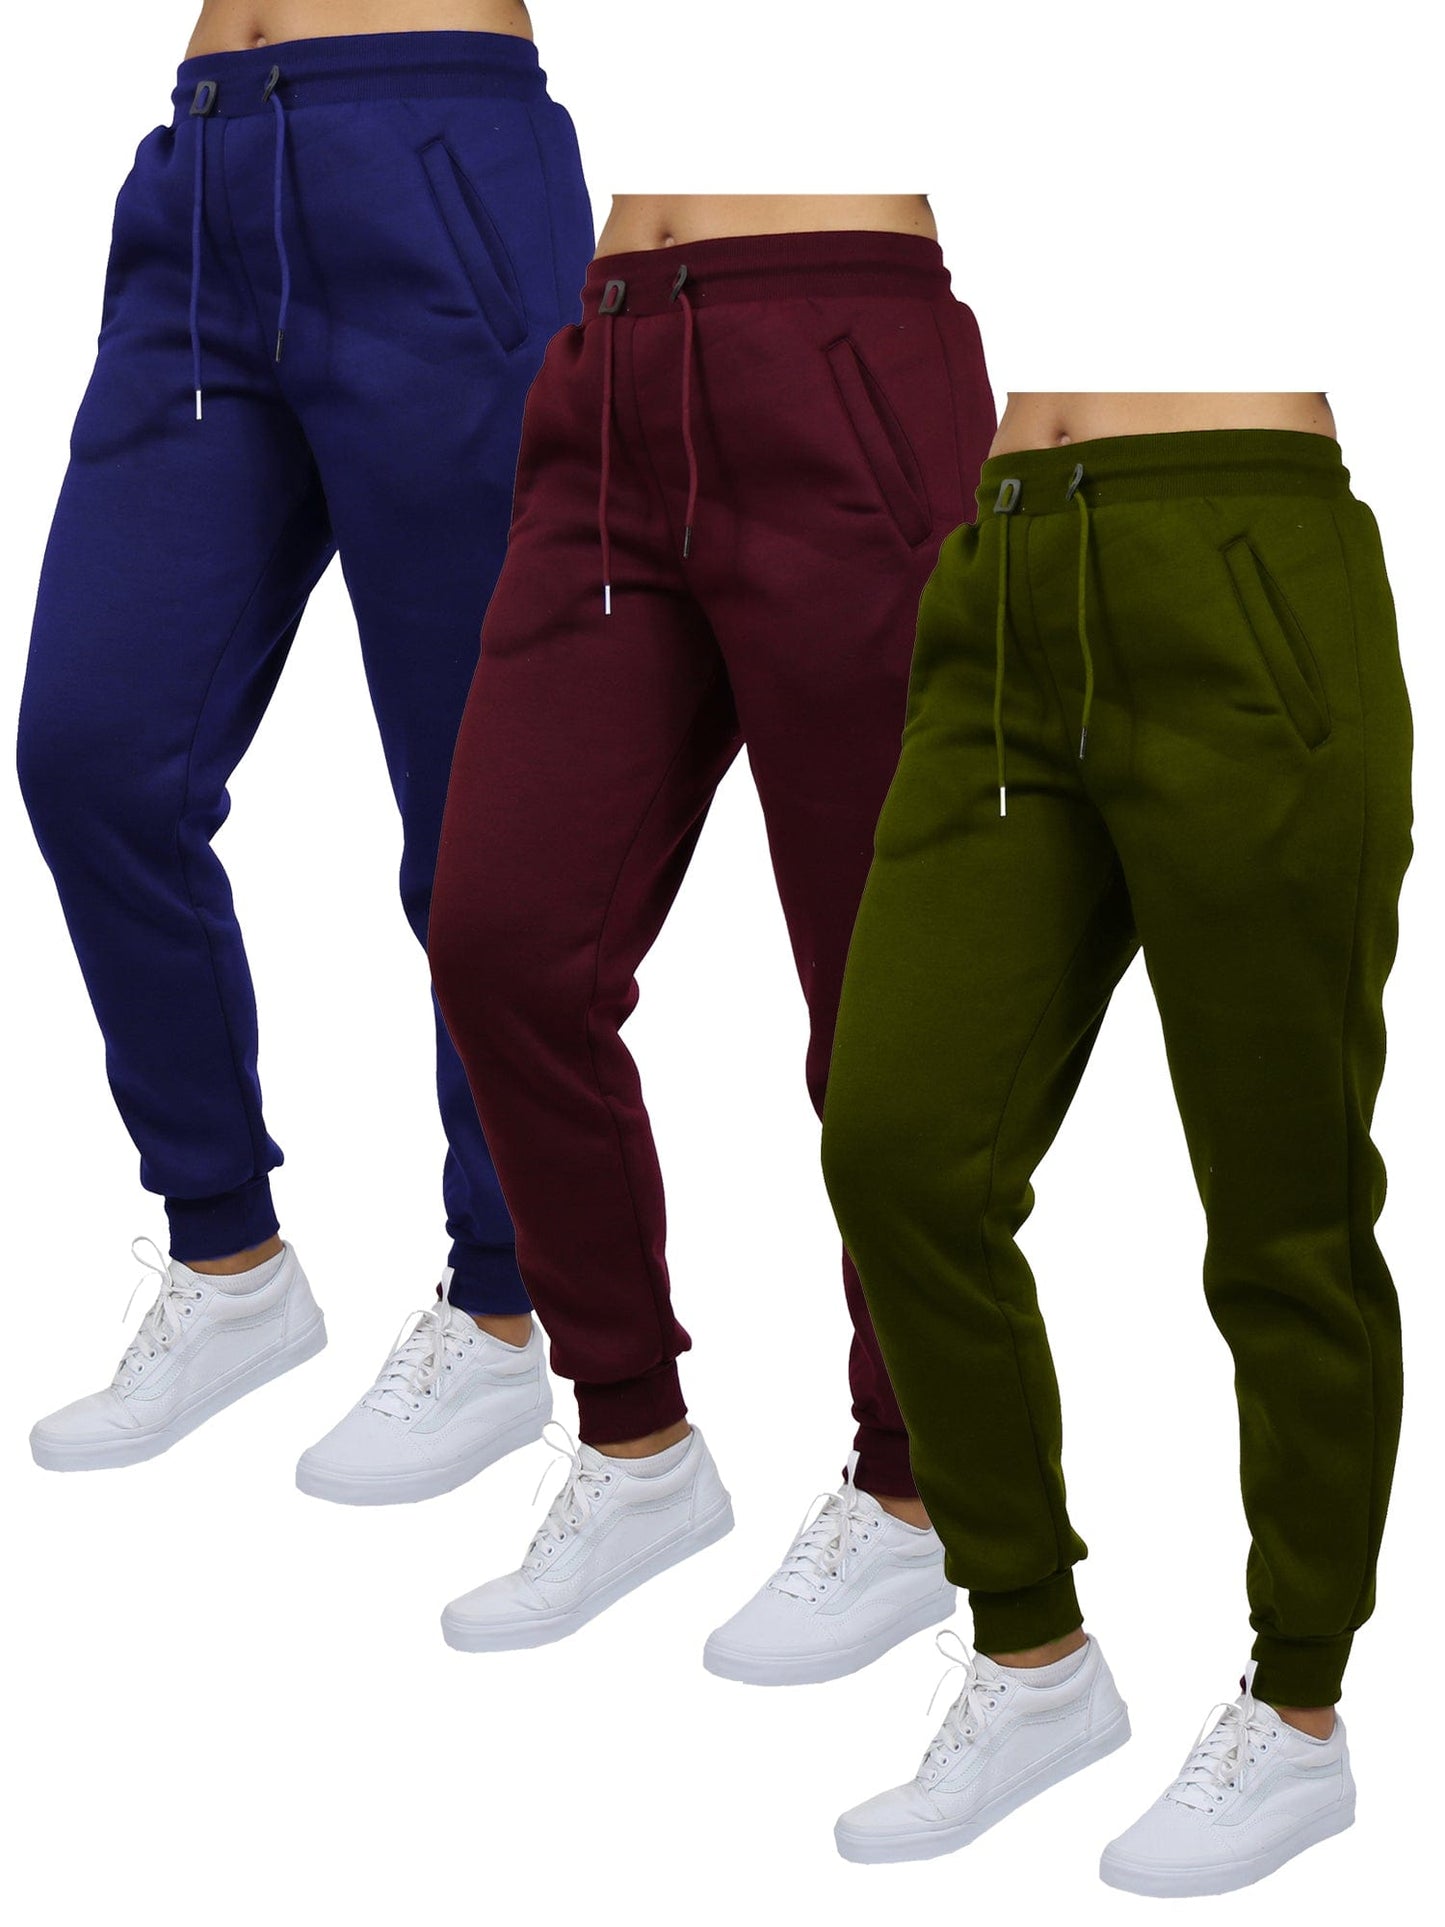 Coney Island Girls' Sweatpants - Active Fleece Joggers (3 Pack